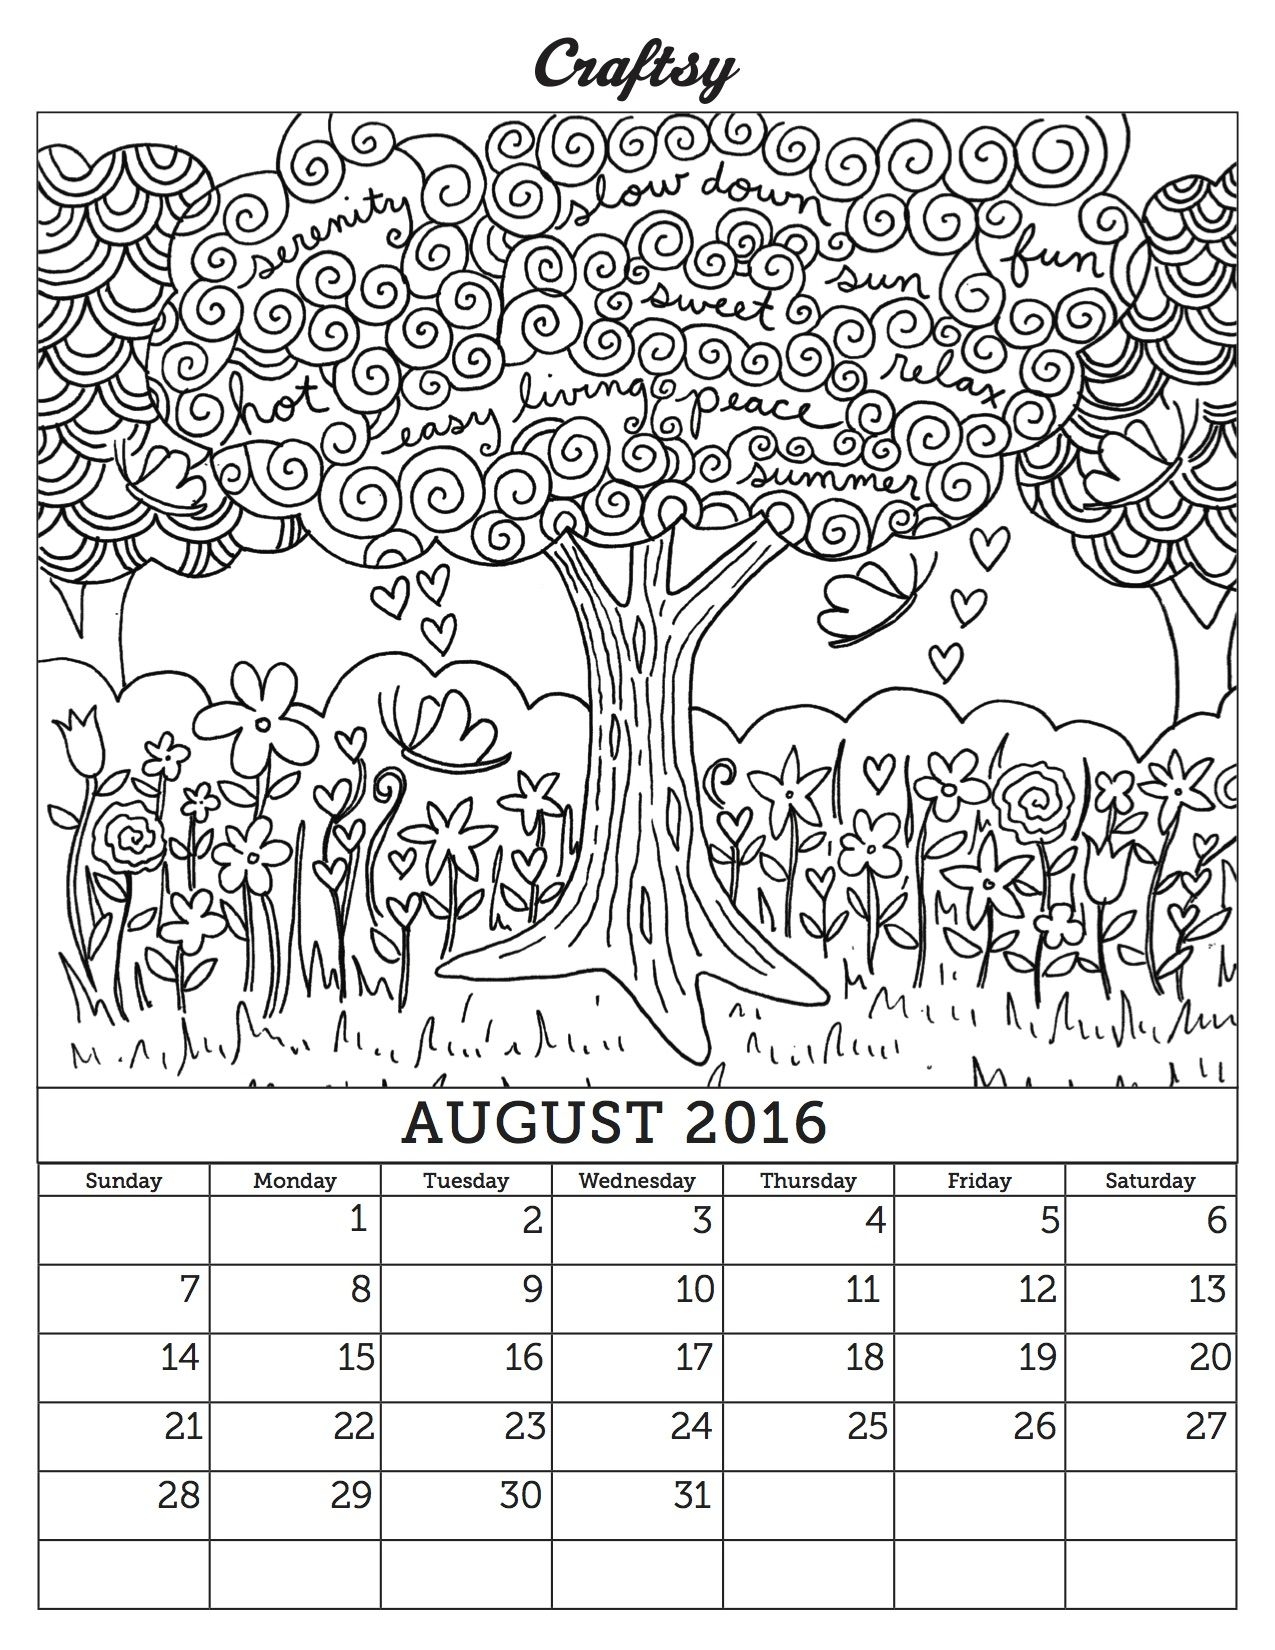 Календарь для детей #14